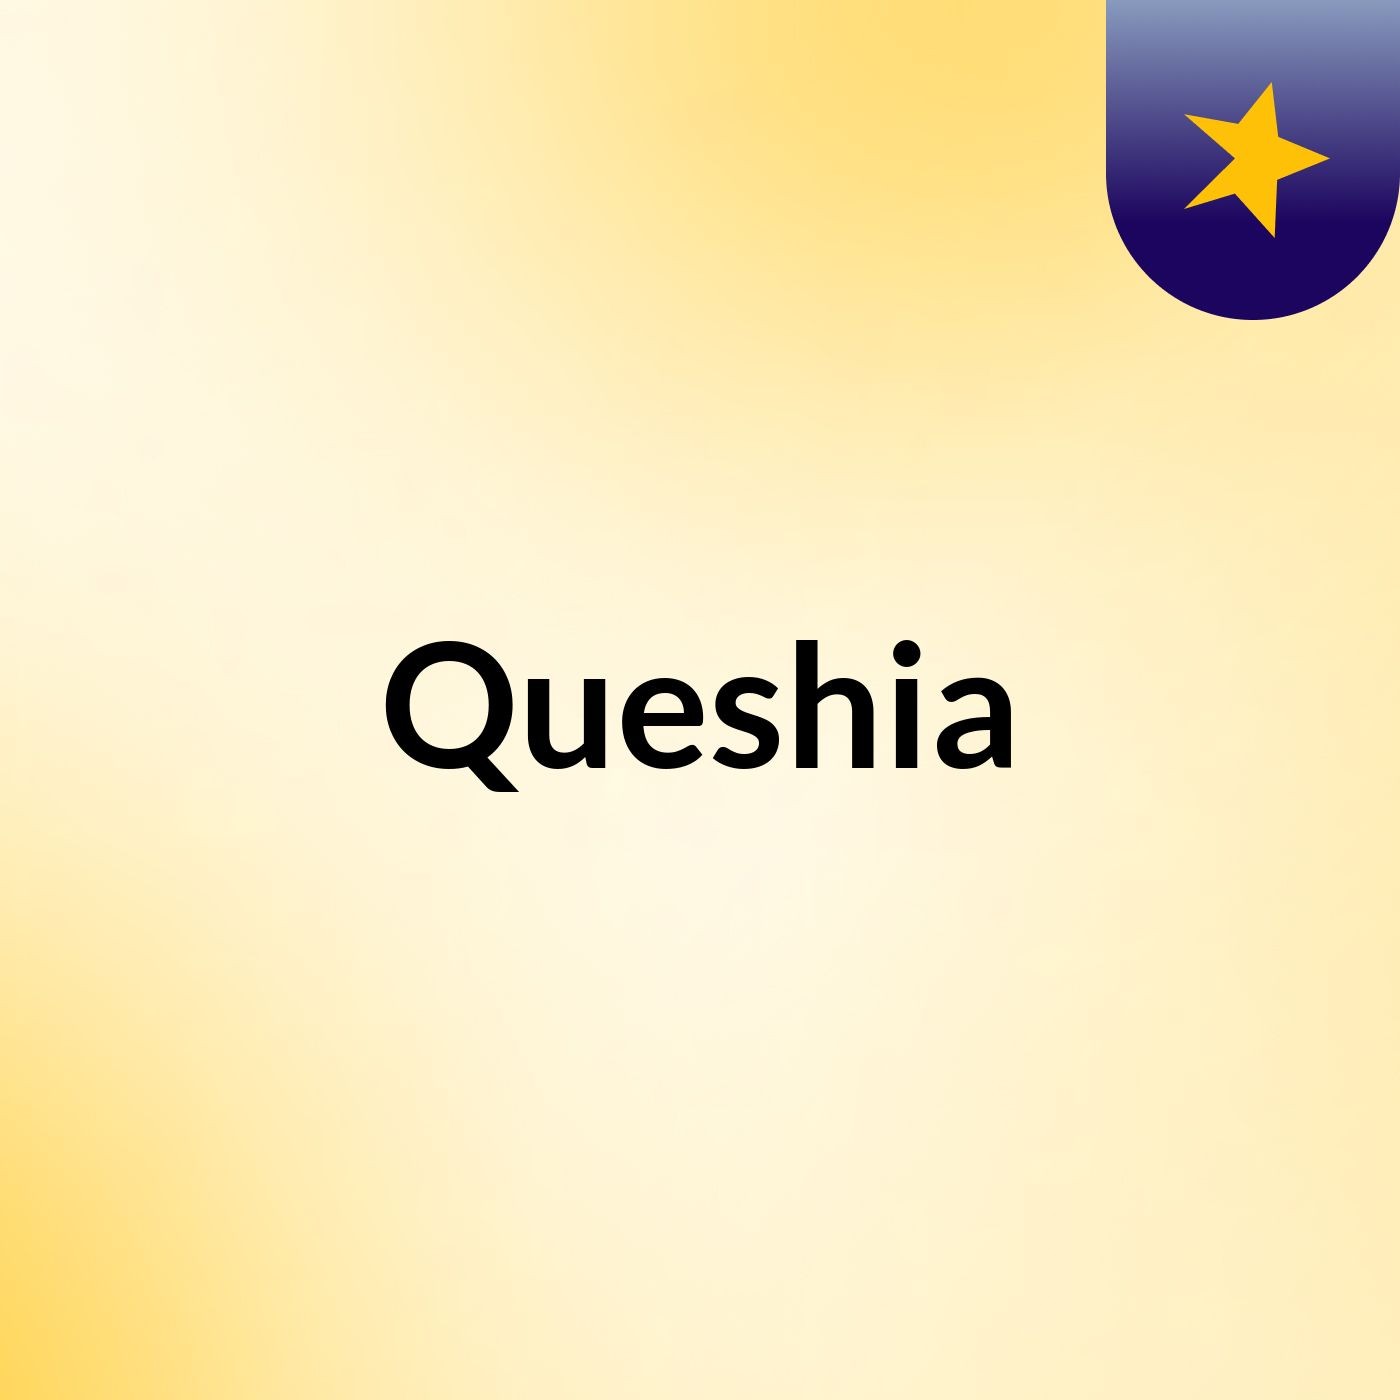 Queshia